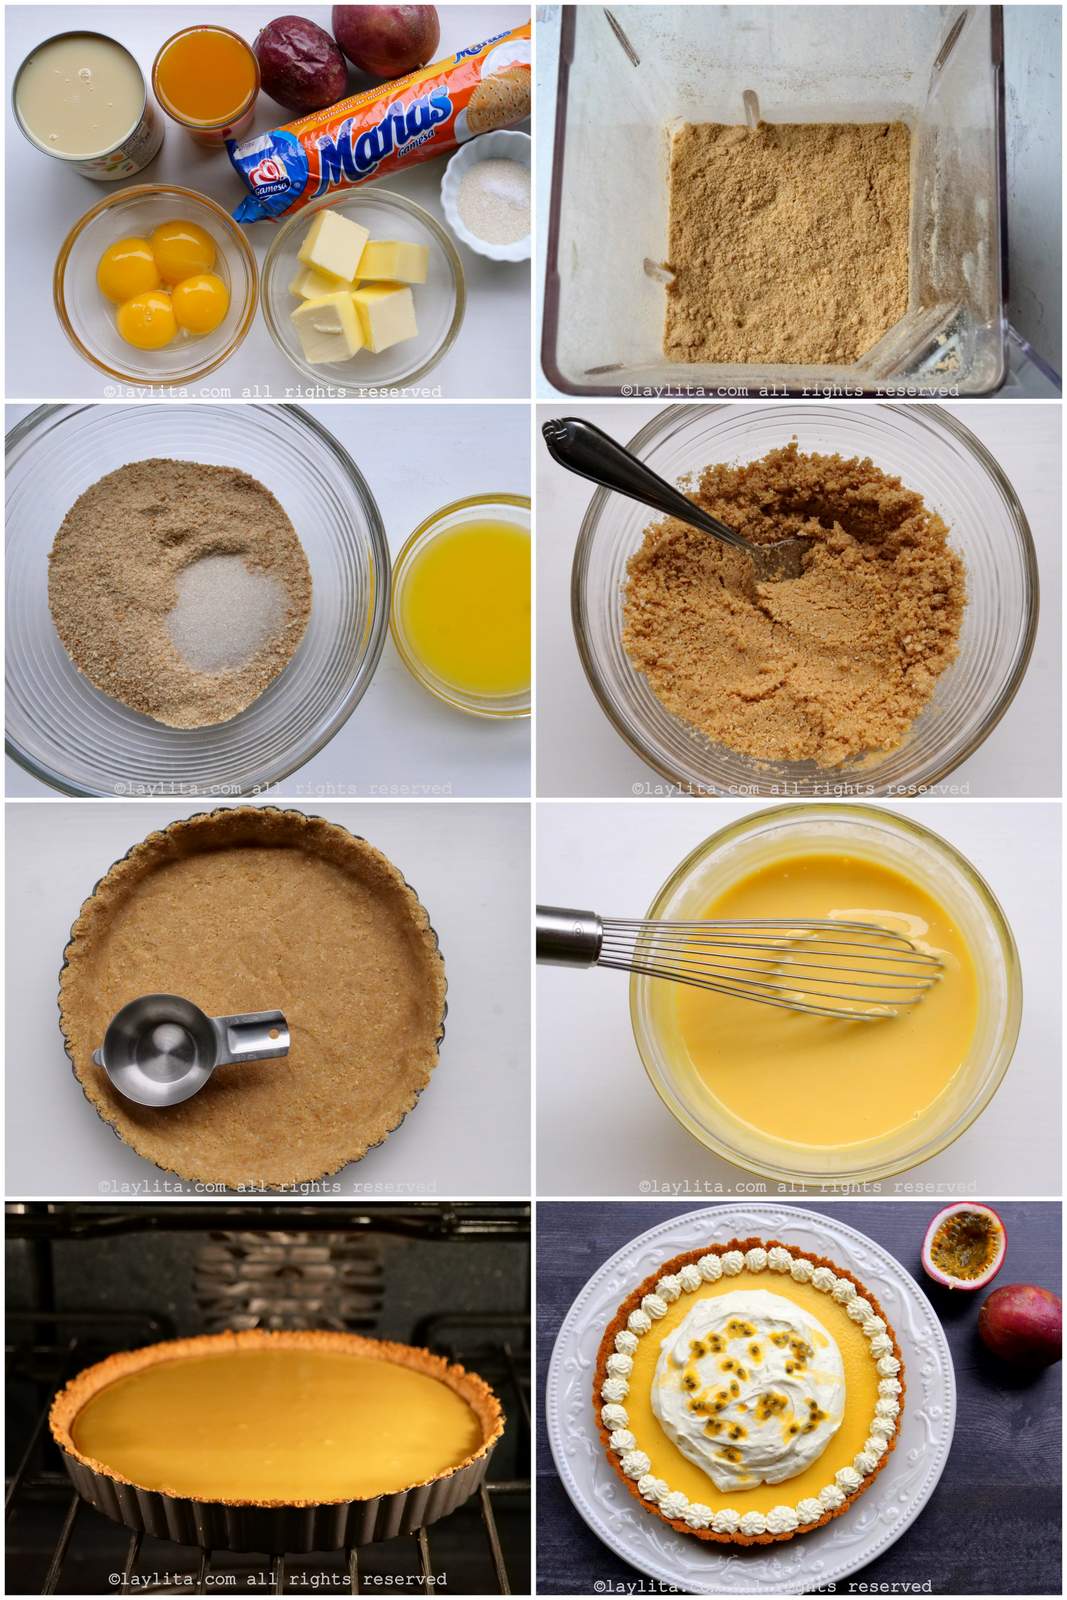 Fotos do passo a passo para preparar a torta de maracujá